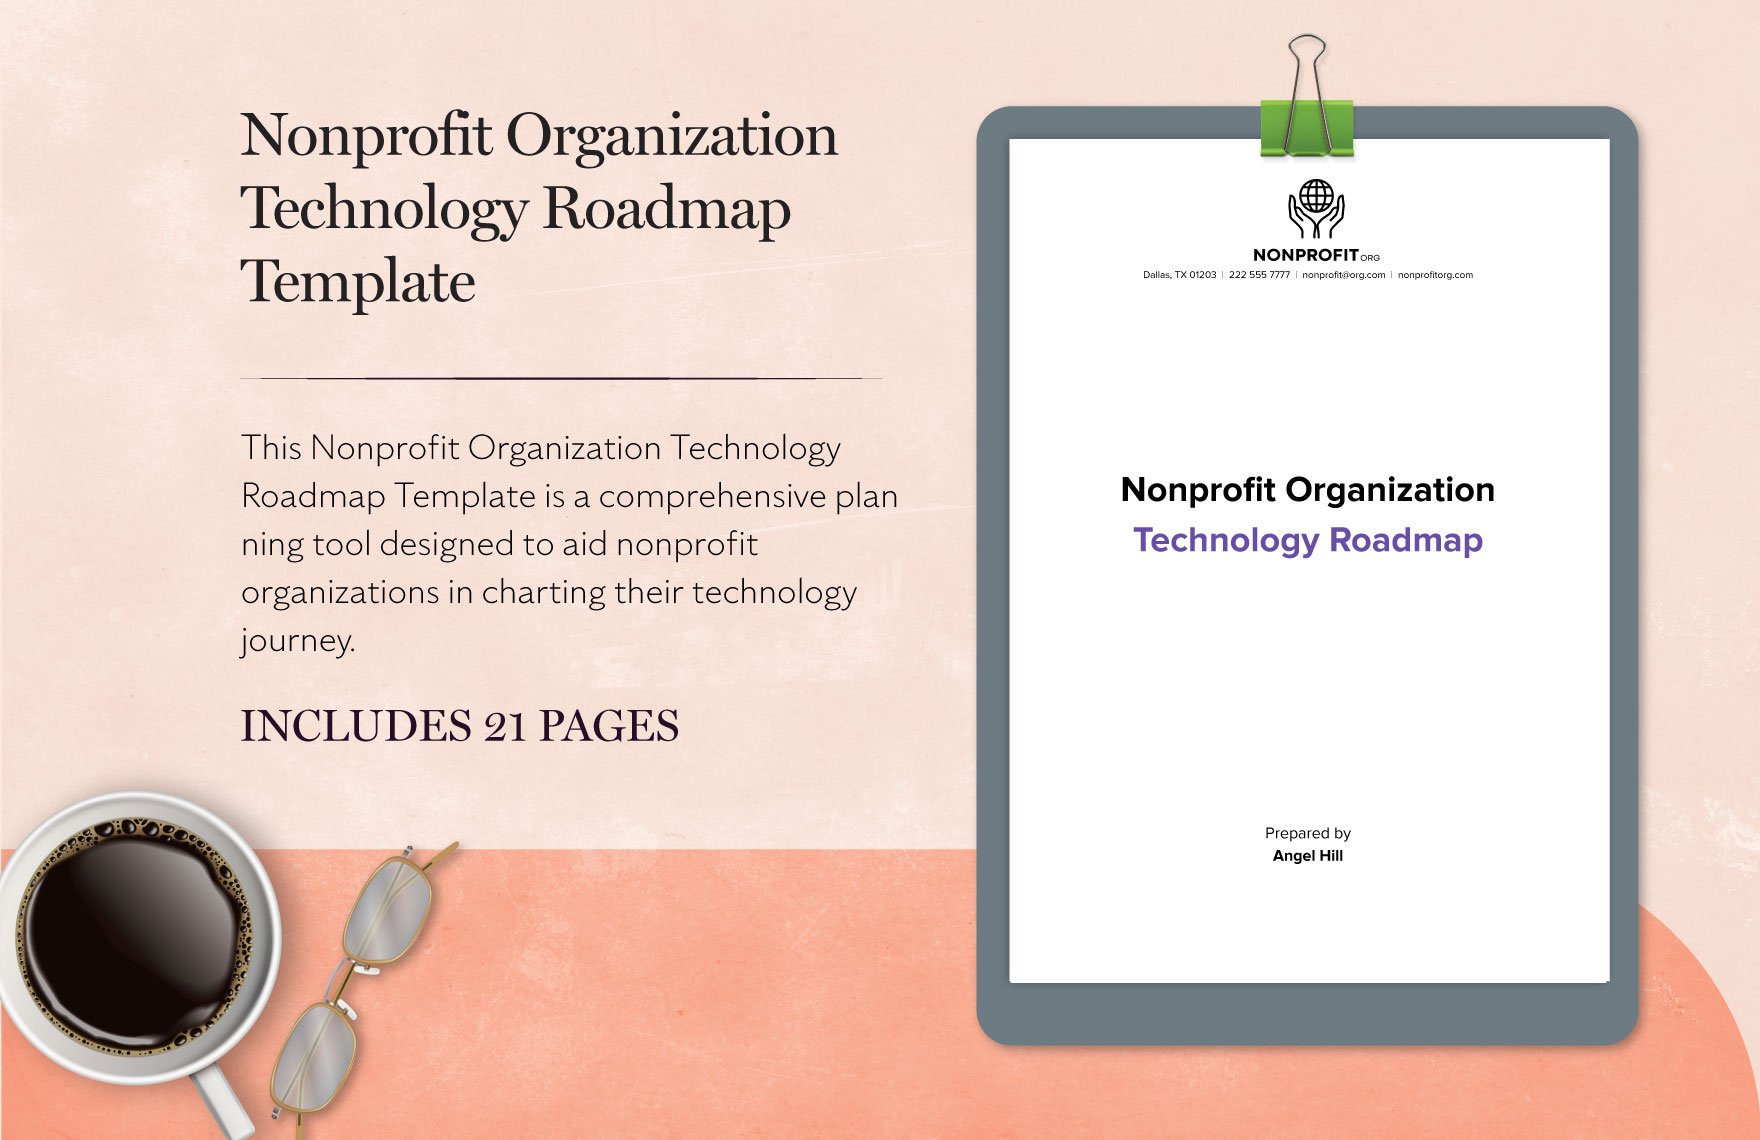 Nonprofit Organization Technology Roadmap Template